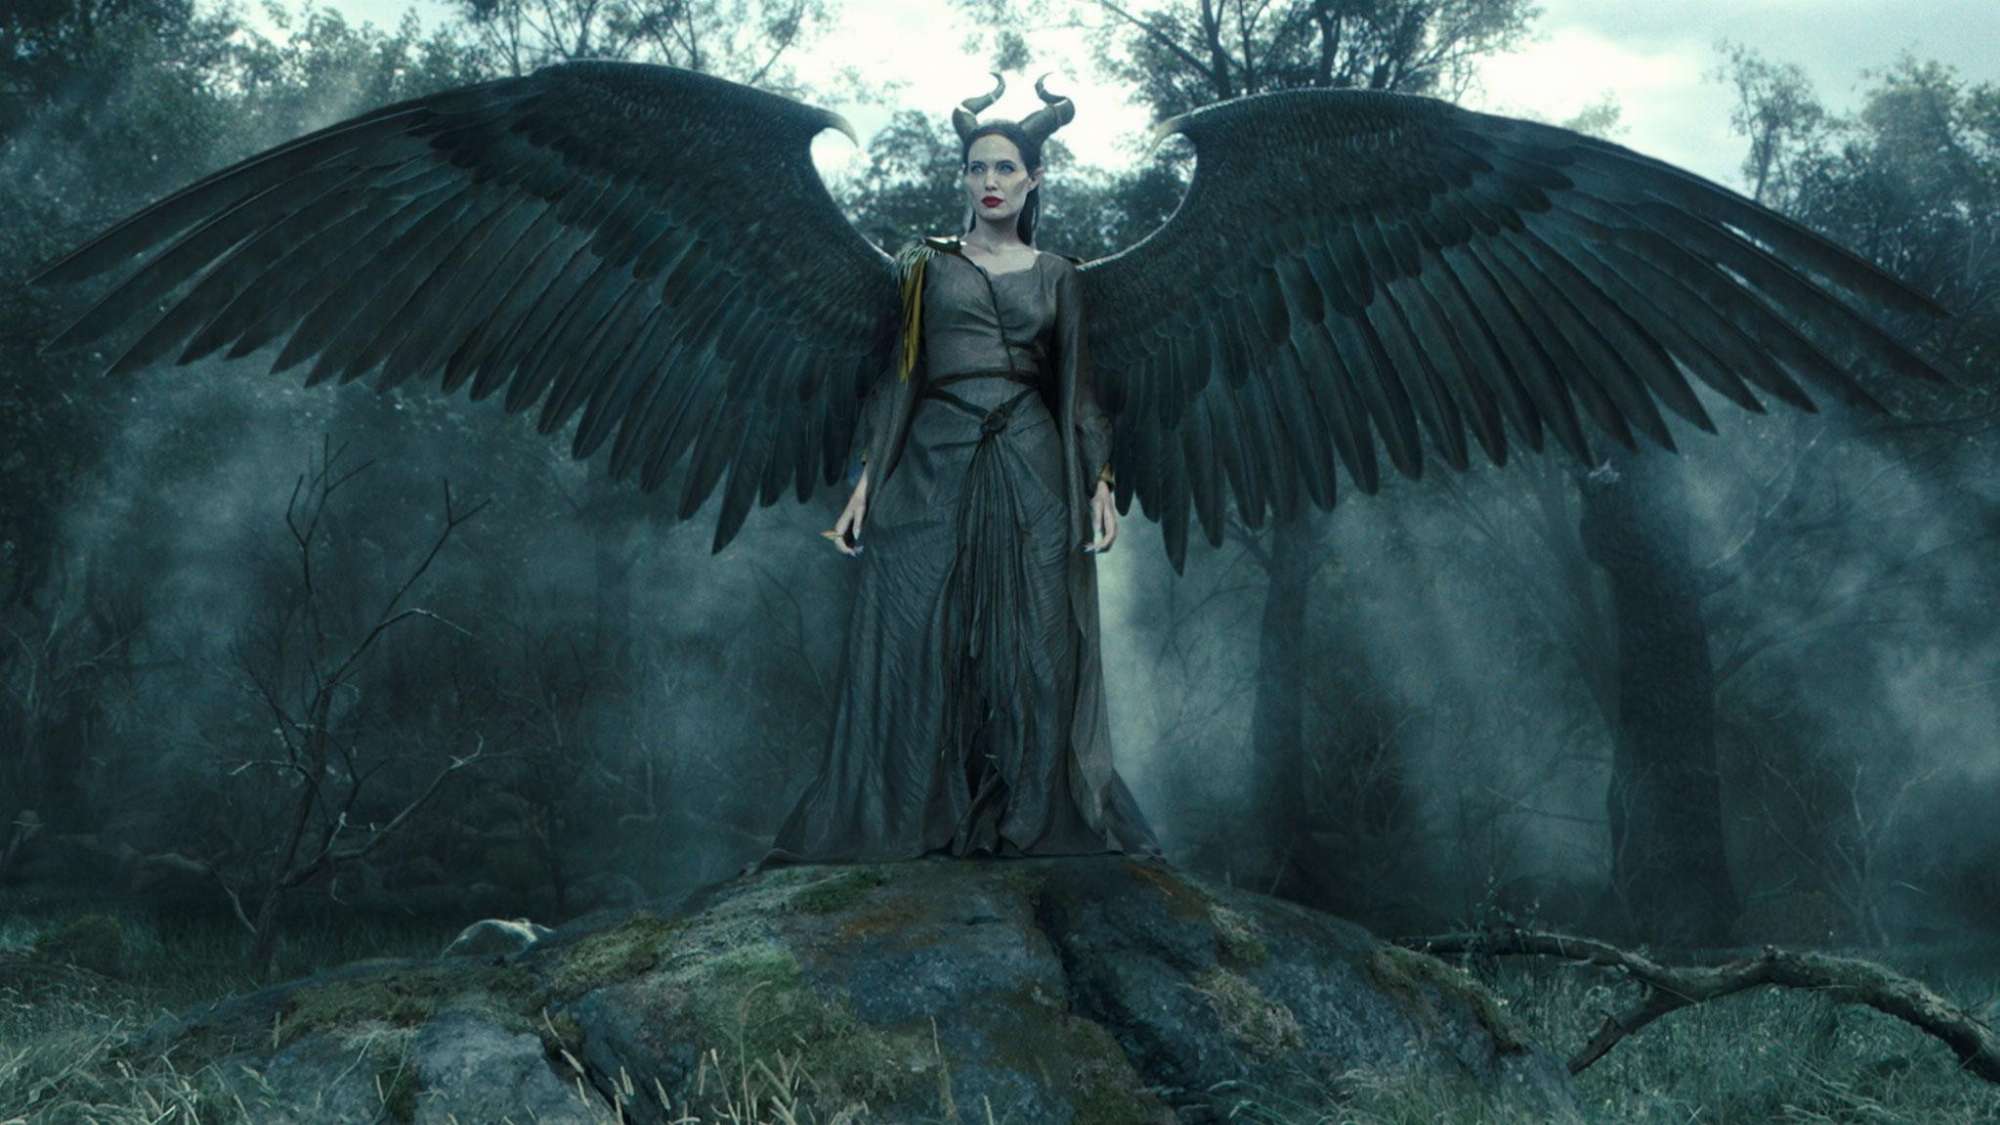 Tiêu đề chính thức cho Maleficent 3 đã được tiết lộ